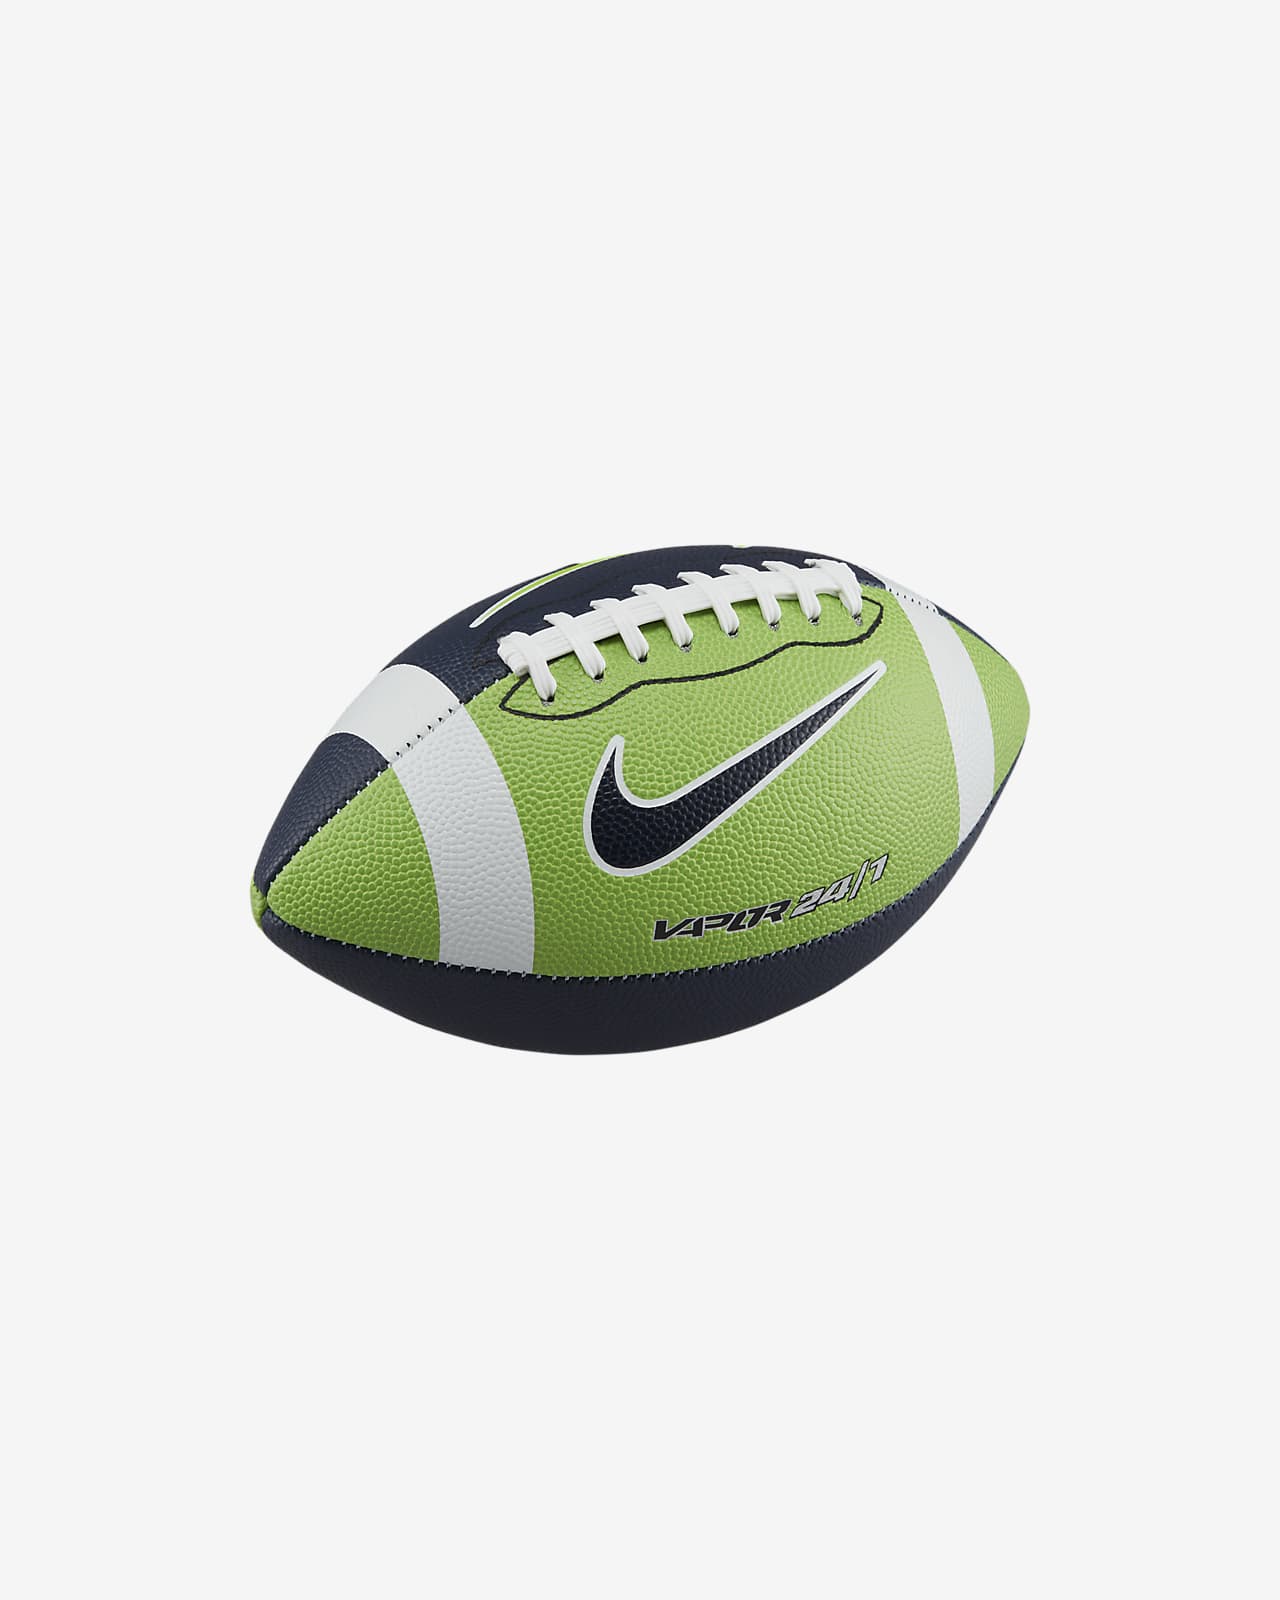 Indígena fondo catalogar Balón de fútbol americano Nike Vapor 24/7. Nike.com